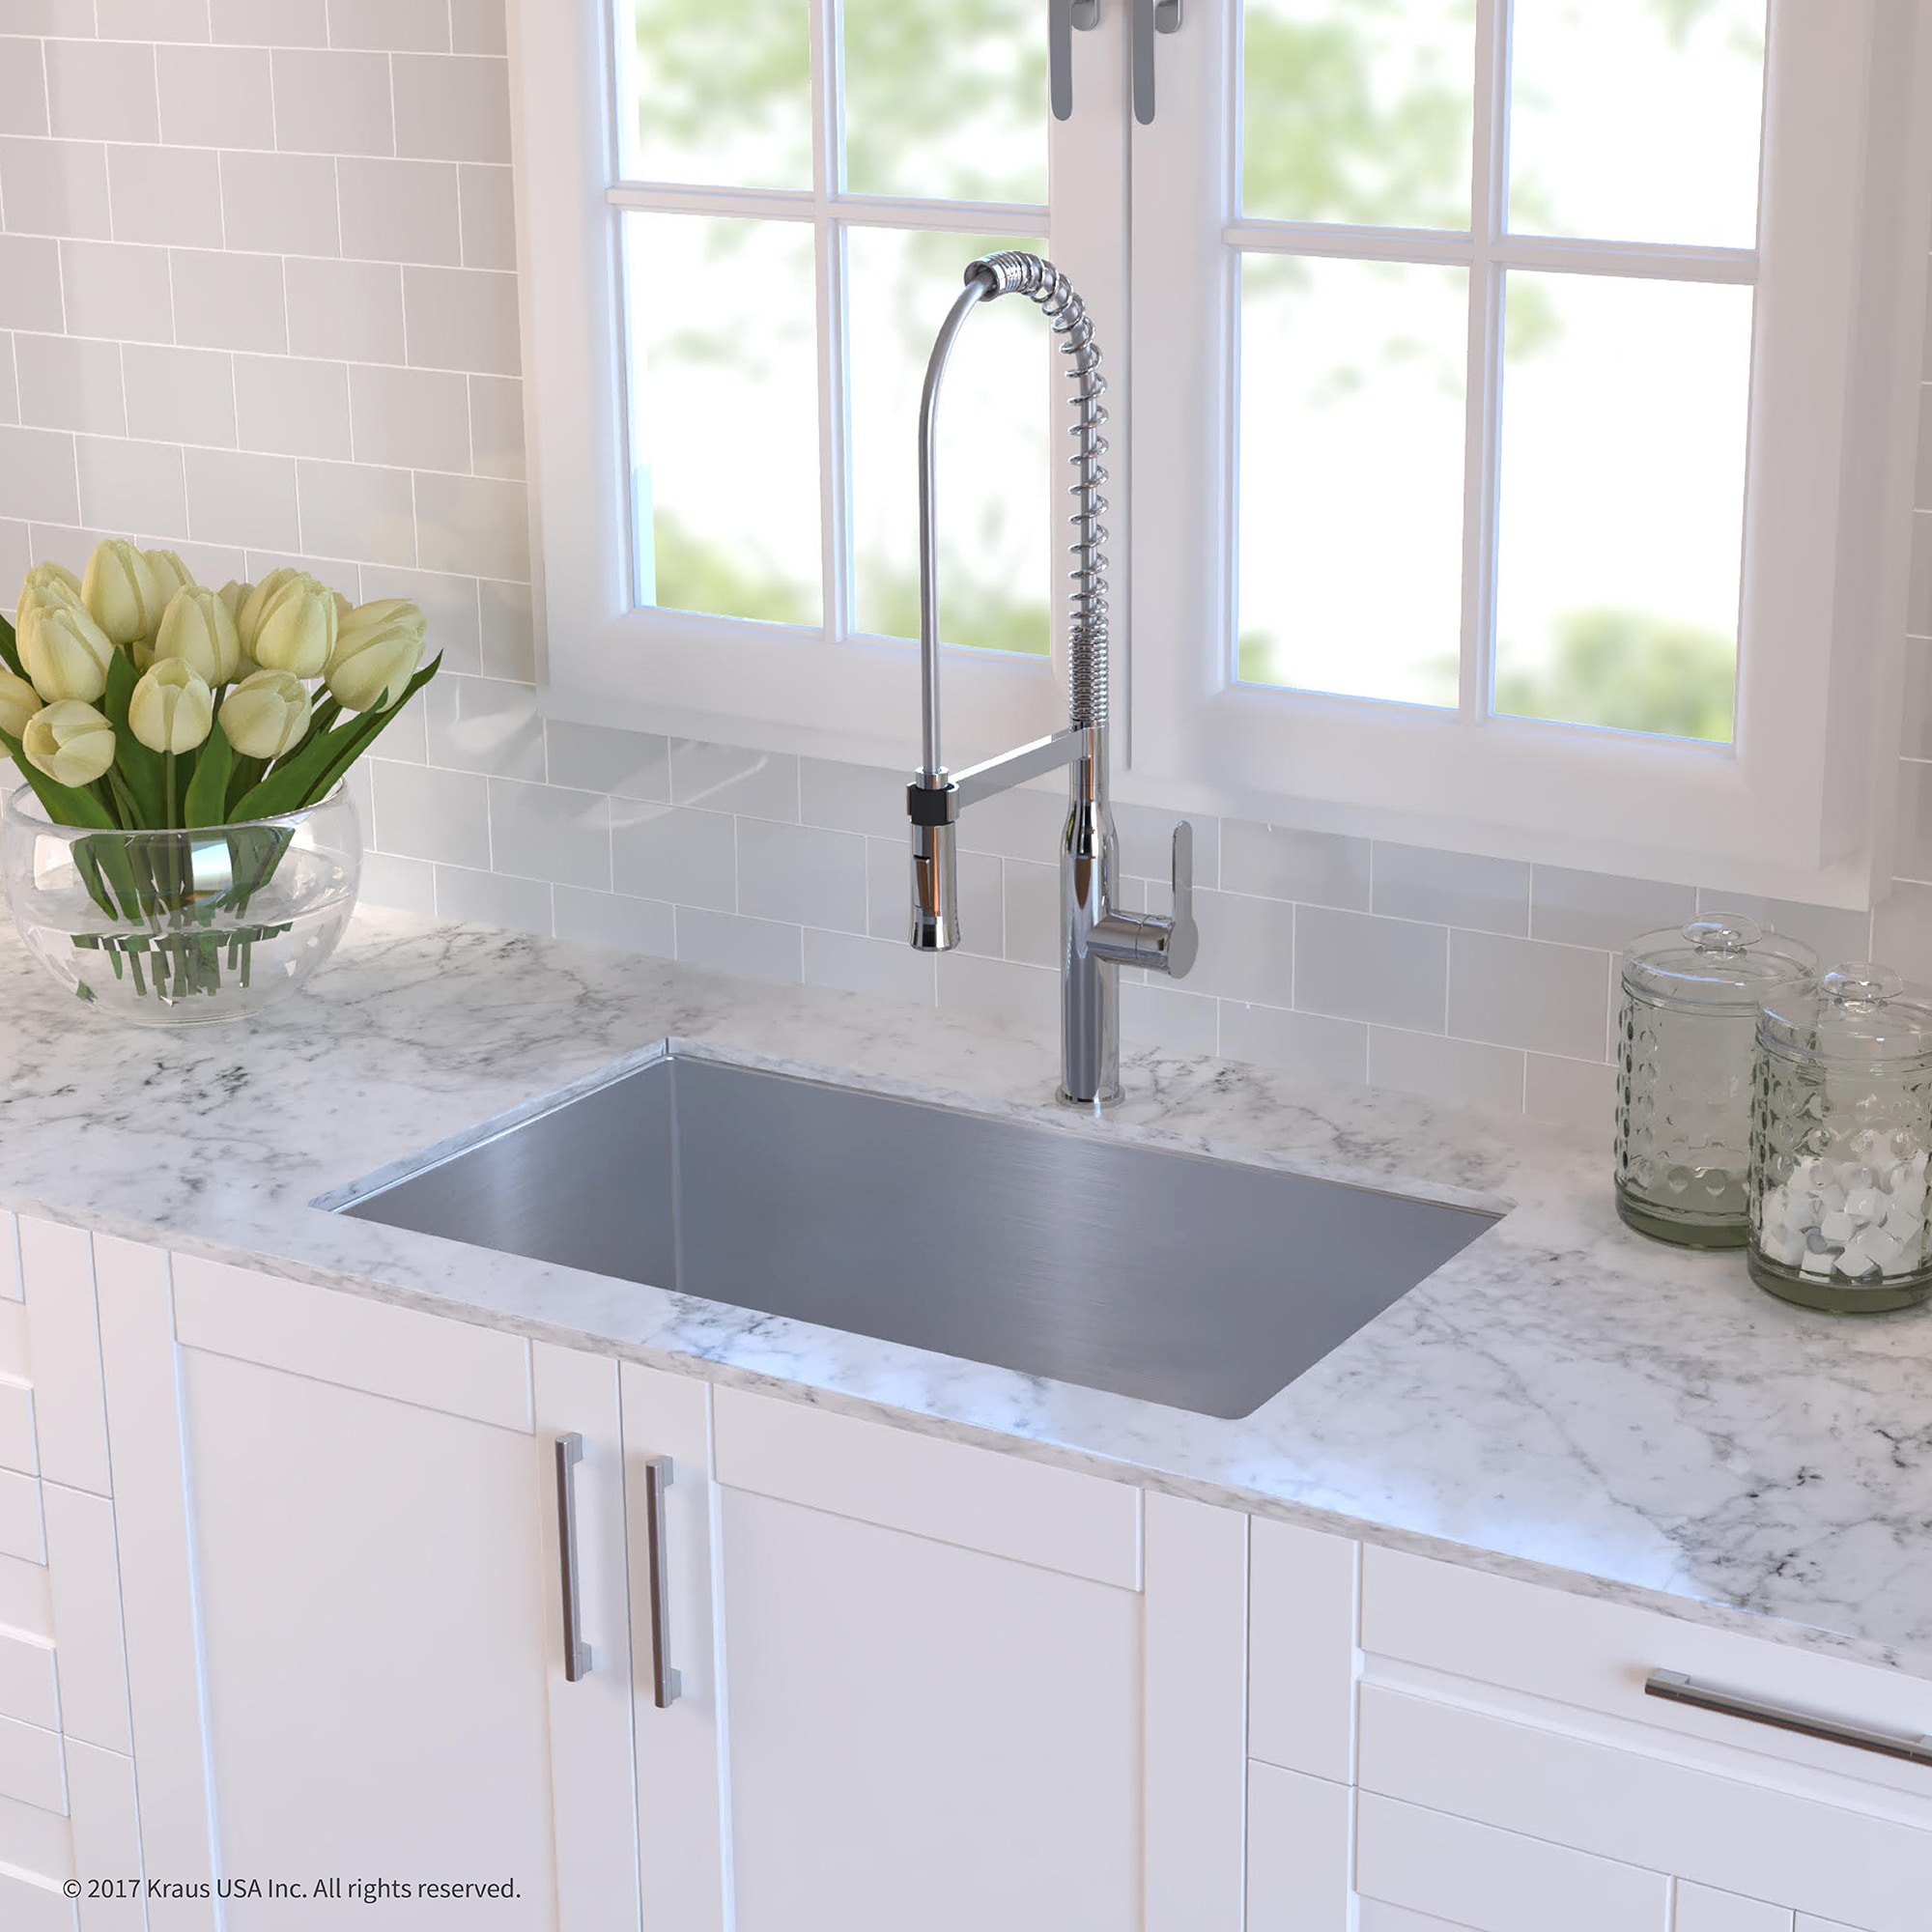 Kraus 30 Undermount Kitchen Sink Kitchen Appliances Tips